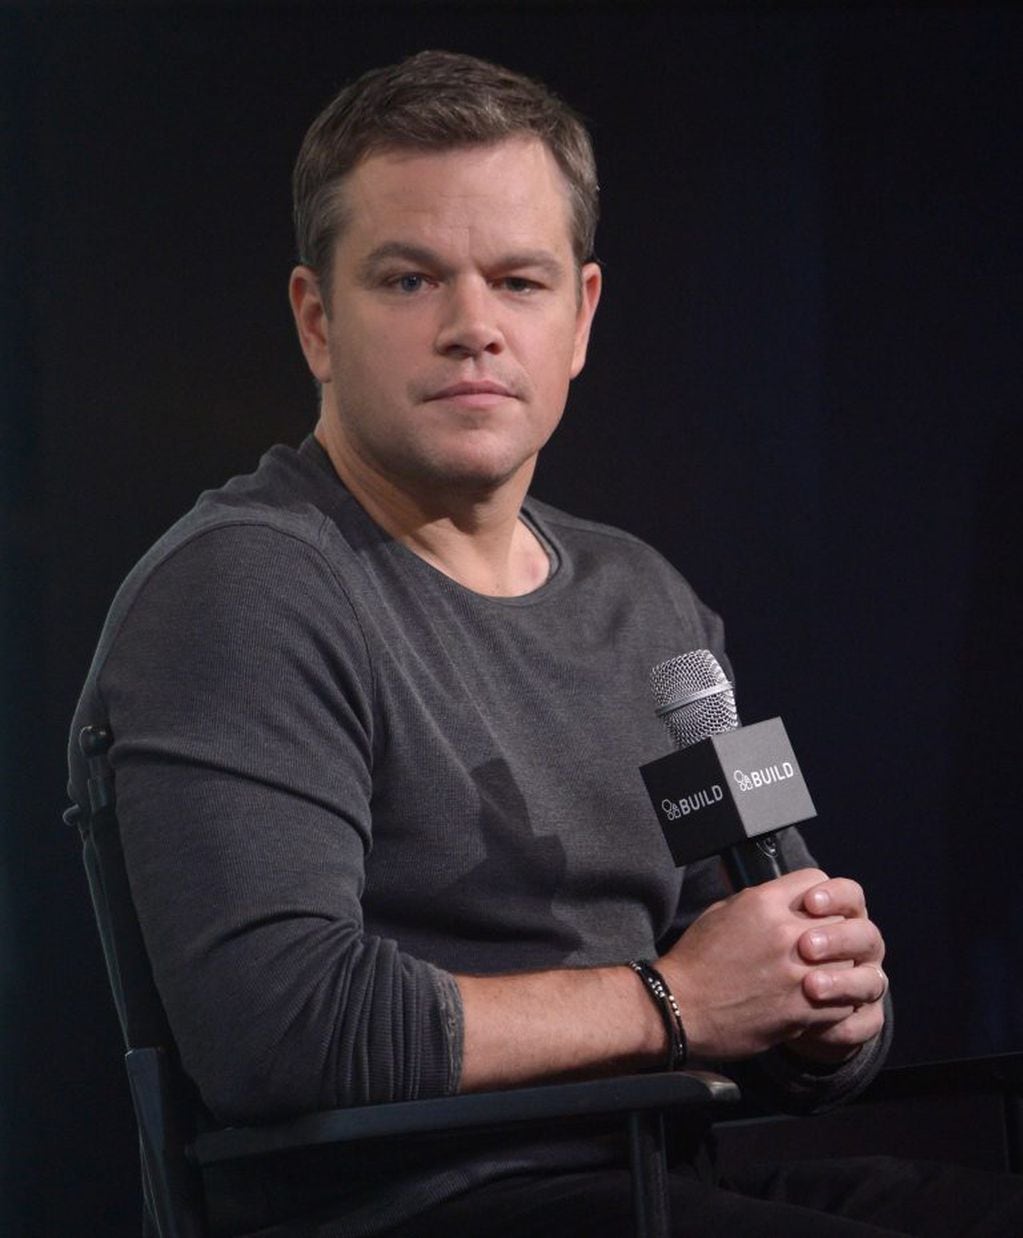 Matt Damon rechazó participar en "Avatar", lo que le hizo perder más de 250 millones de dólares.